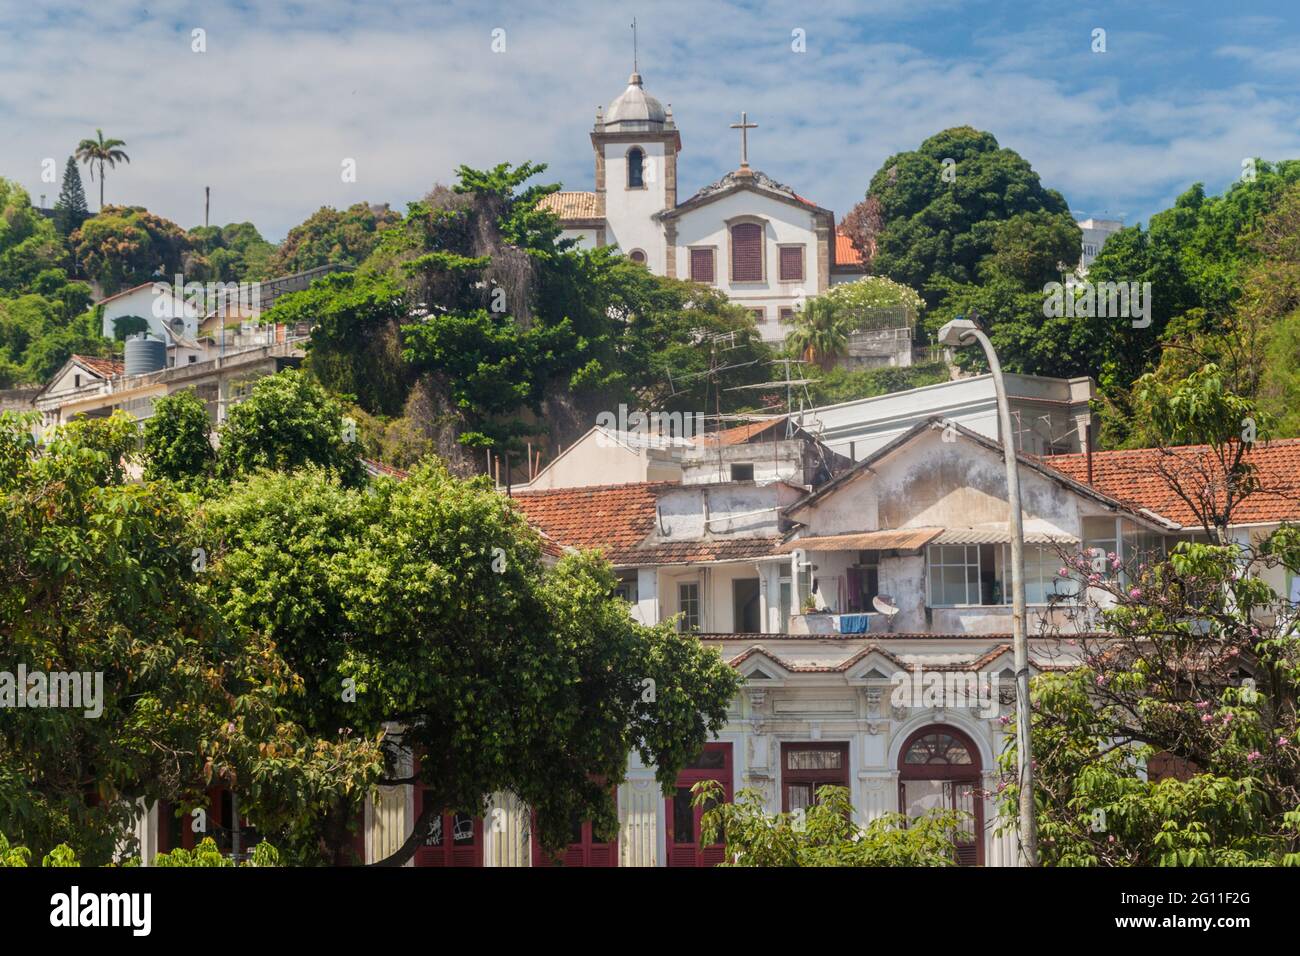 Santa Teresa district in Rio de Janeiro, Brazil Stock Photo